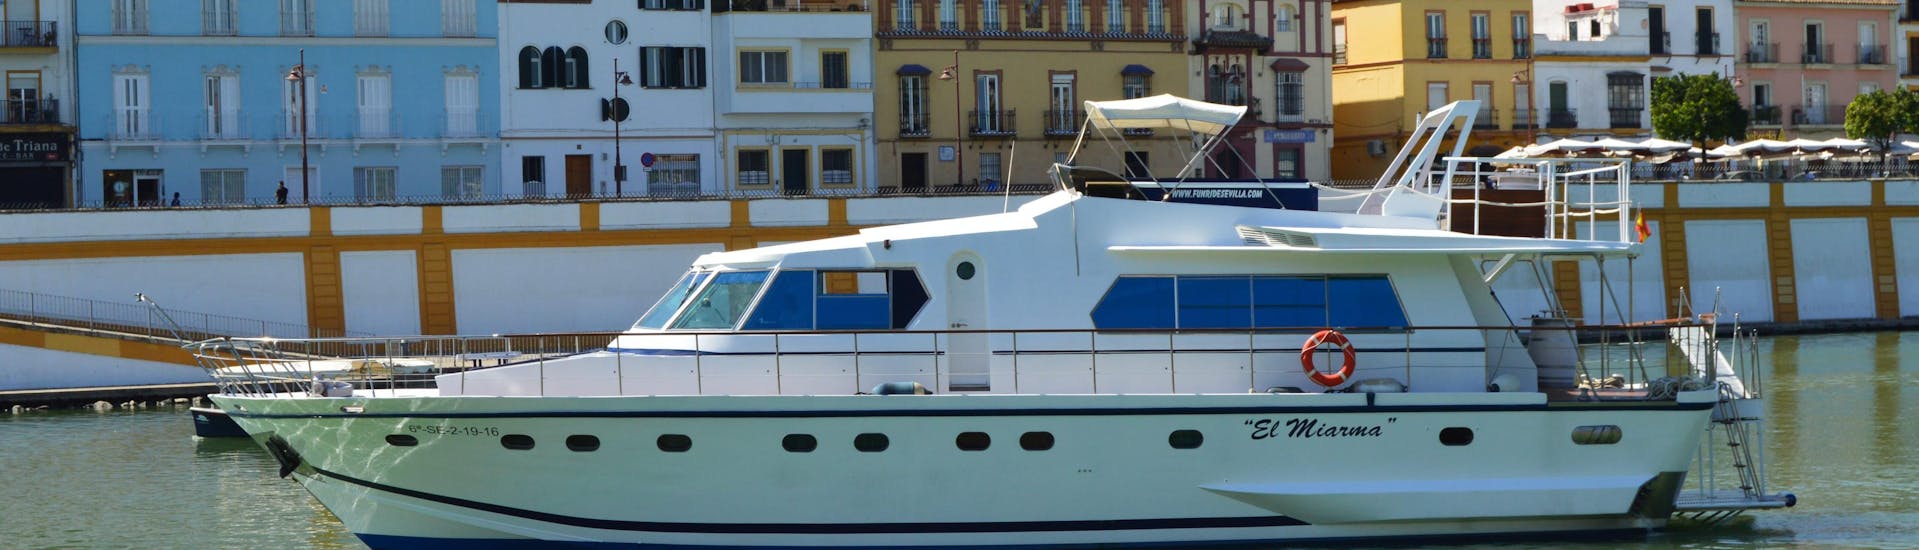 Die Tourteilnehmer bewundern die bunten Gebäude und die Naturlandschaft während ihrer Luxuriösen Bootstour am Río Guadalquivir mit 6-Gänge-Menü mit Fun Ride Sevilla.